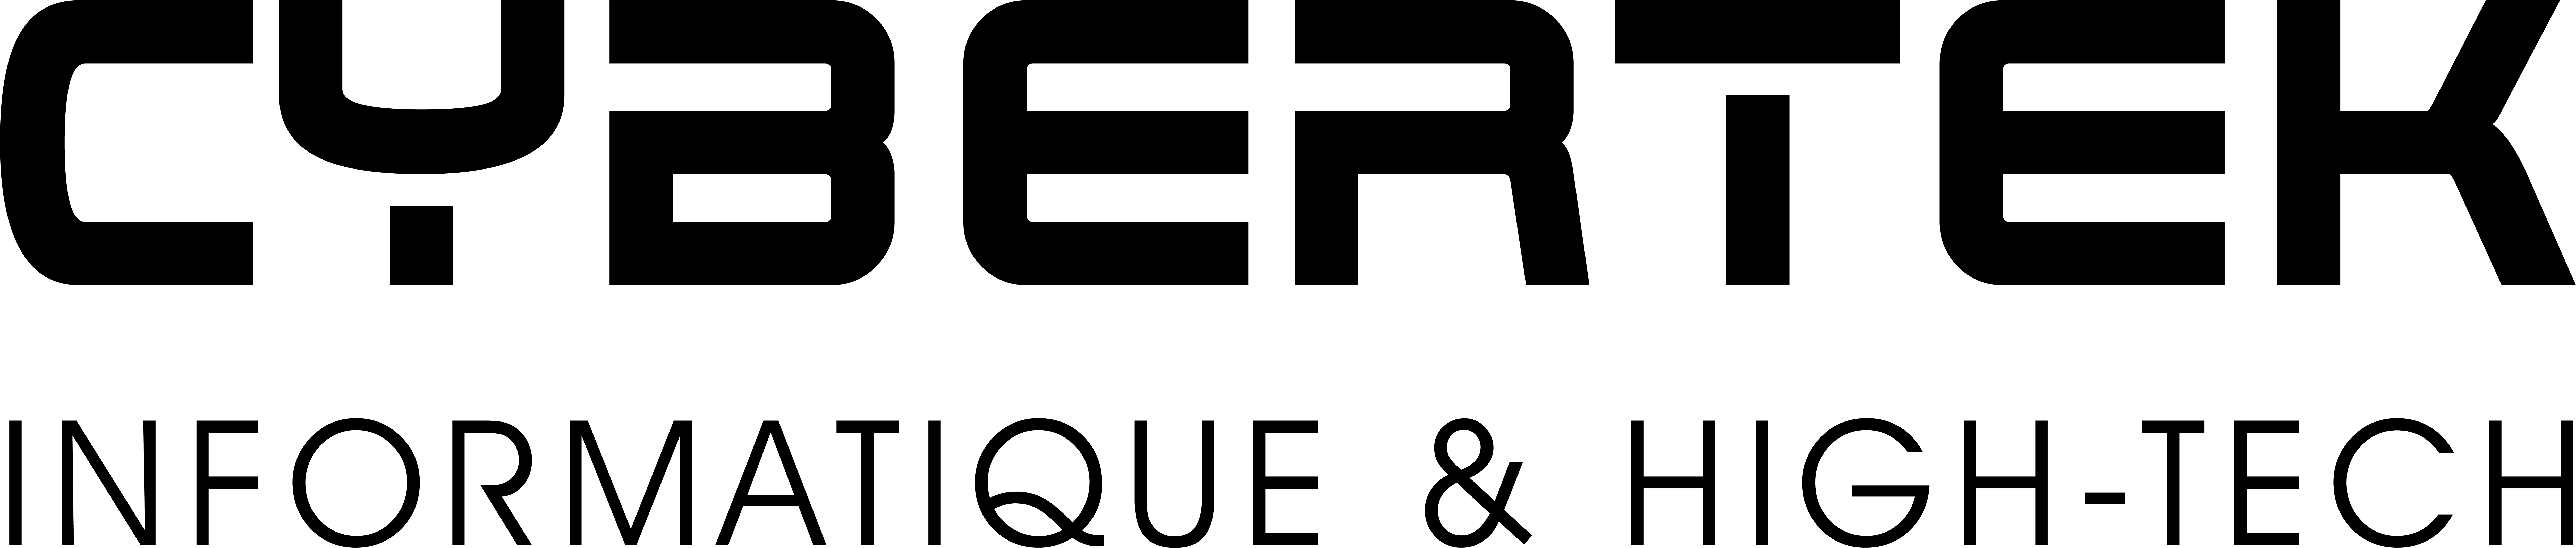 Cybertek Logo